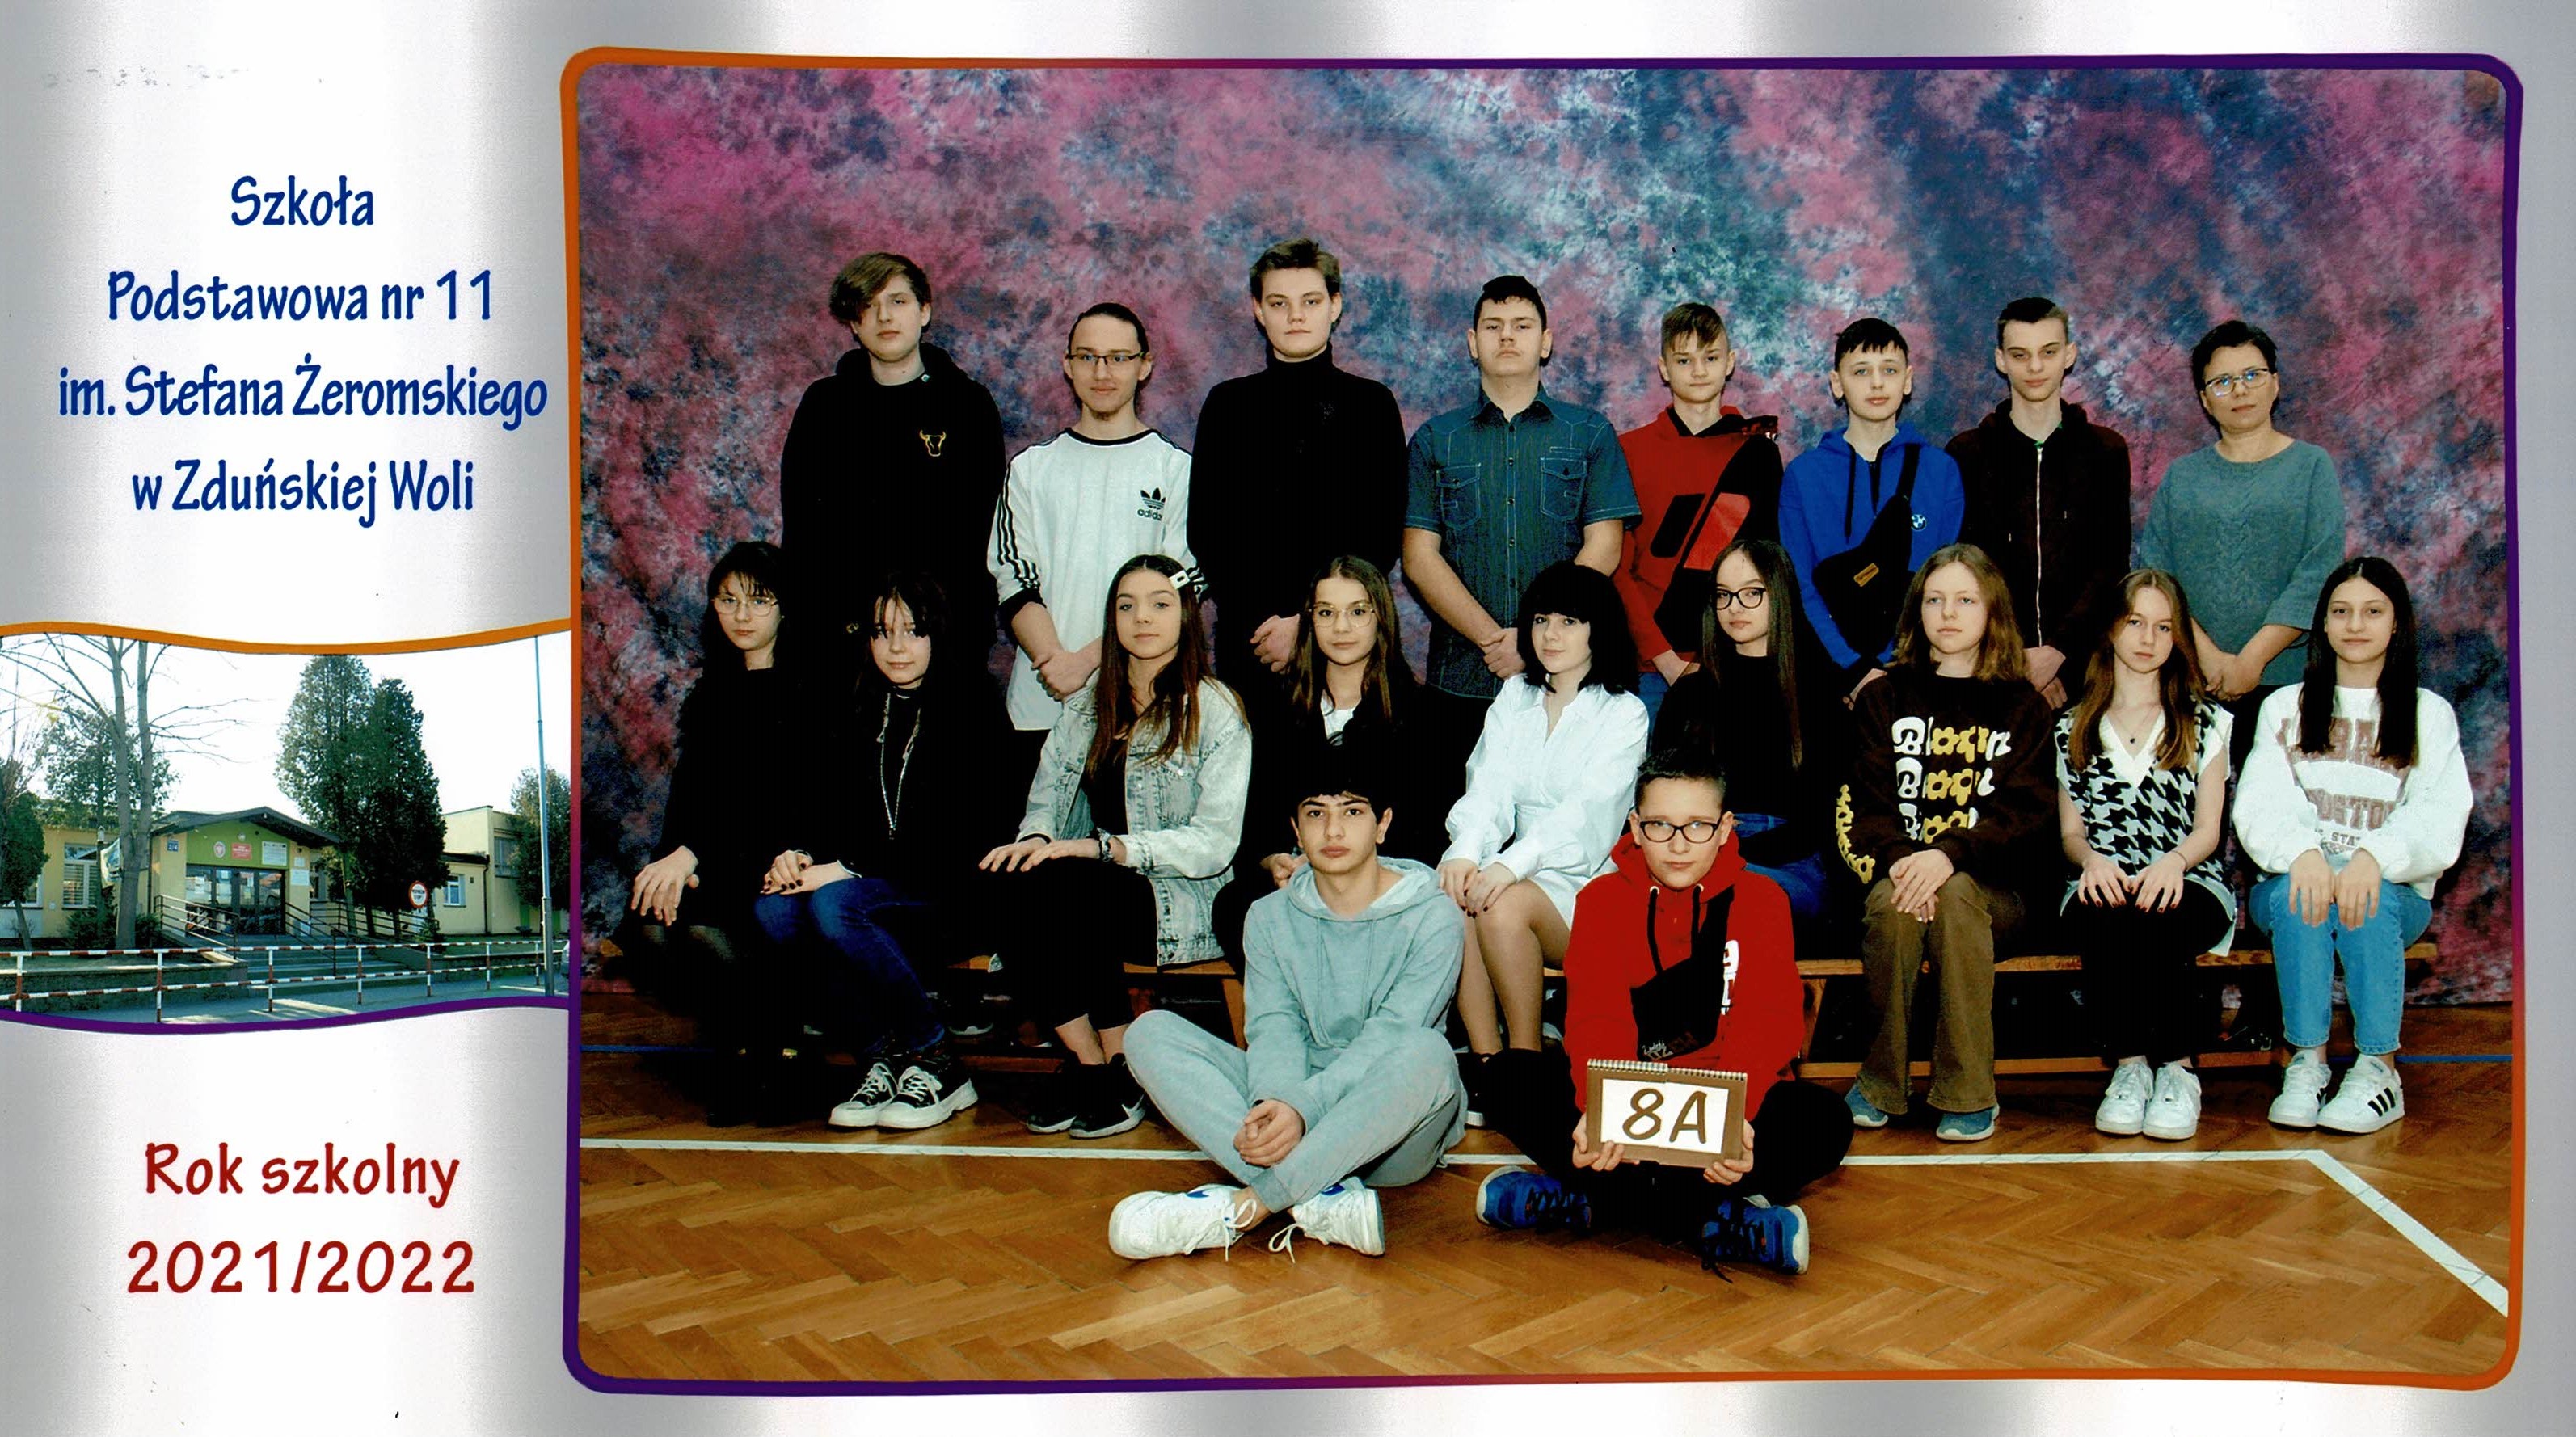 Uczniowie klasy 8A, dziewczynki i chłopcy siedzący na ławce z tabliczką "klasa 8a"